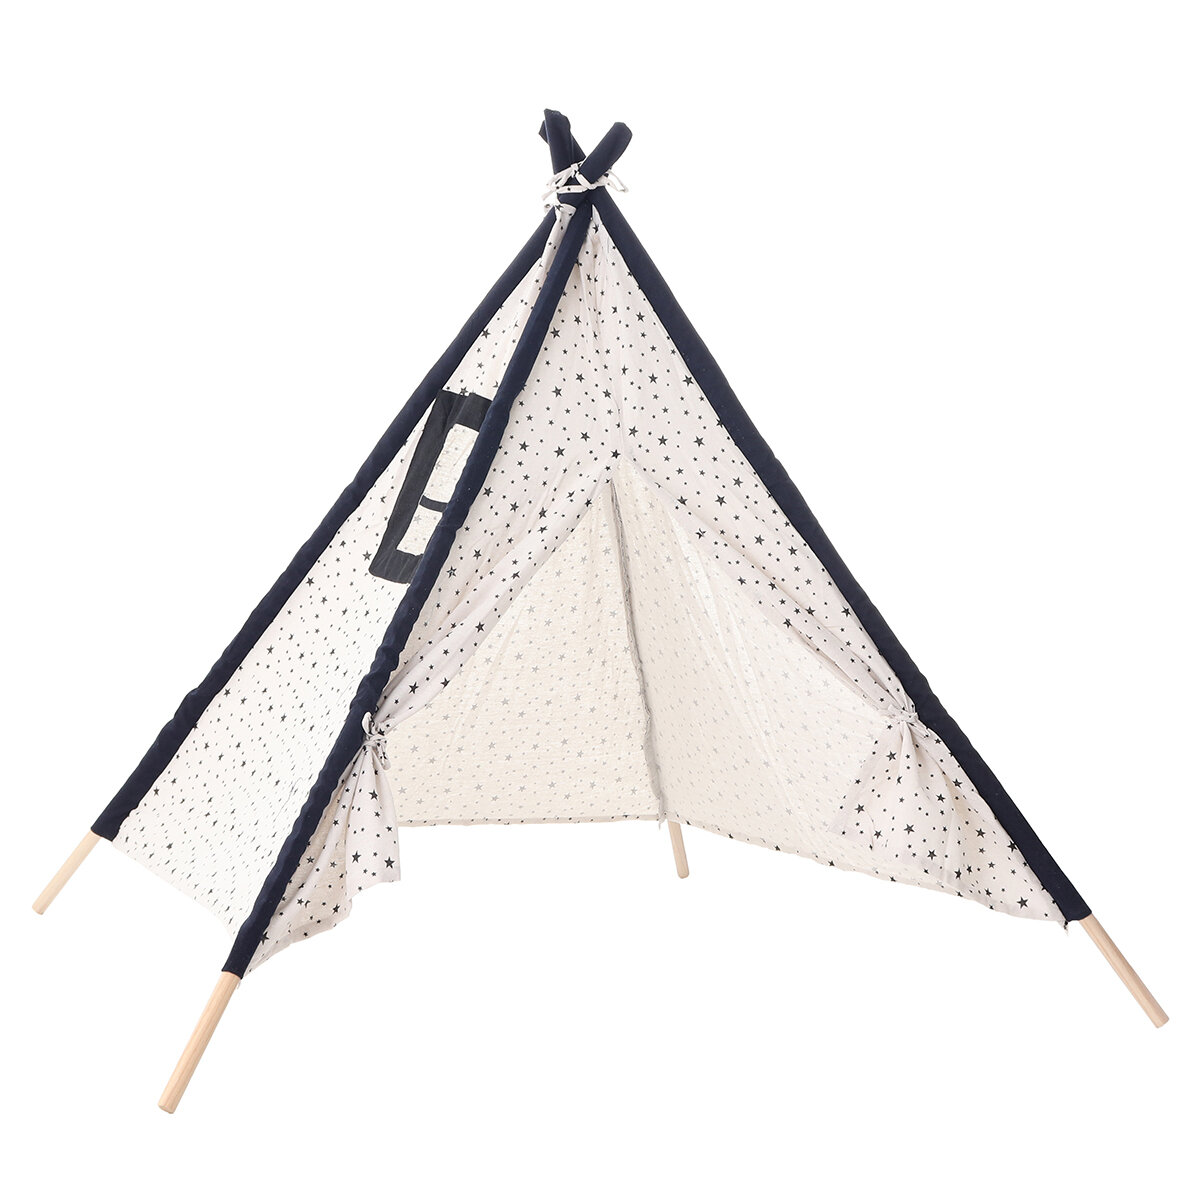 Tenda da gioco portatile per bambini di 135/160 cm, per giocare all'aperto in spiaggia, campeggio o viaggi